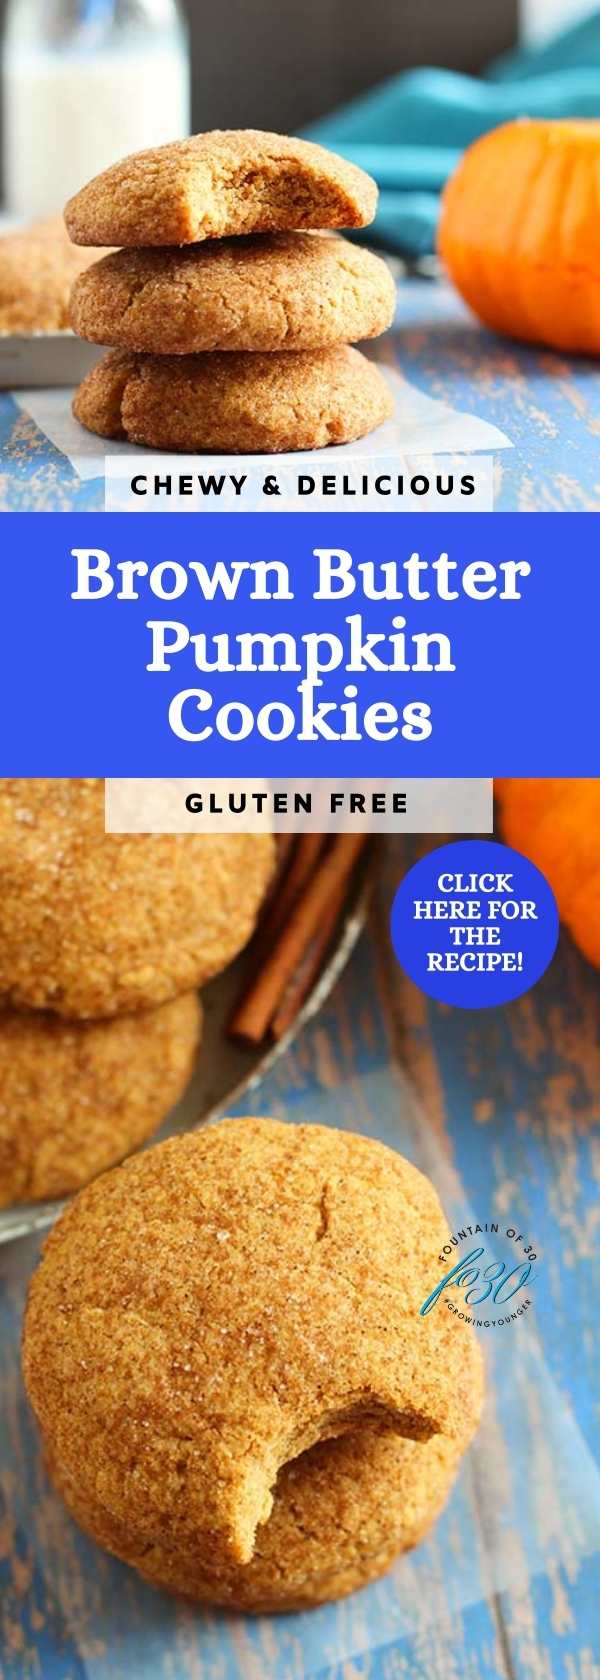 brown butter pumpkin spice cookies gluten free fountainof30